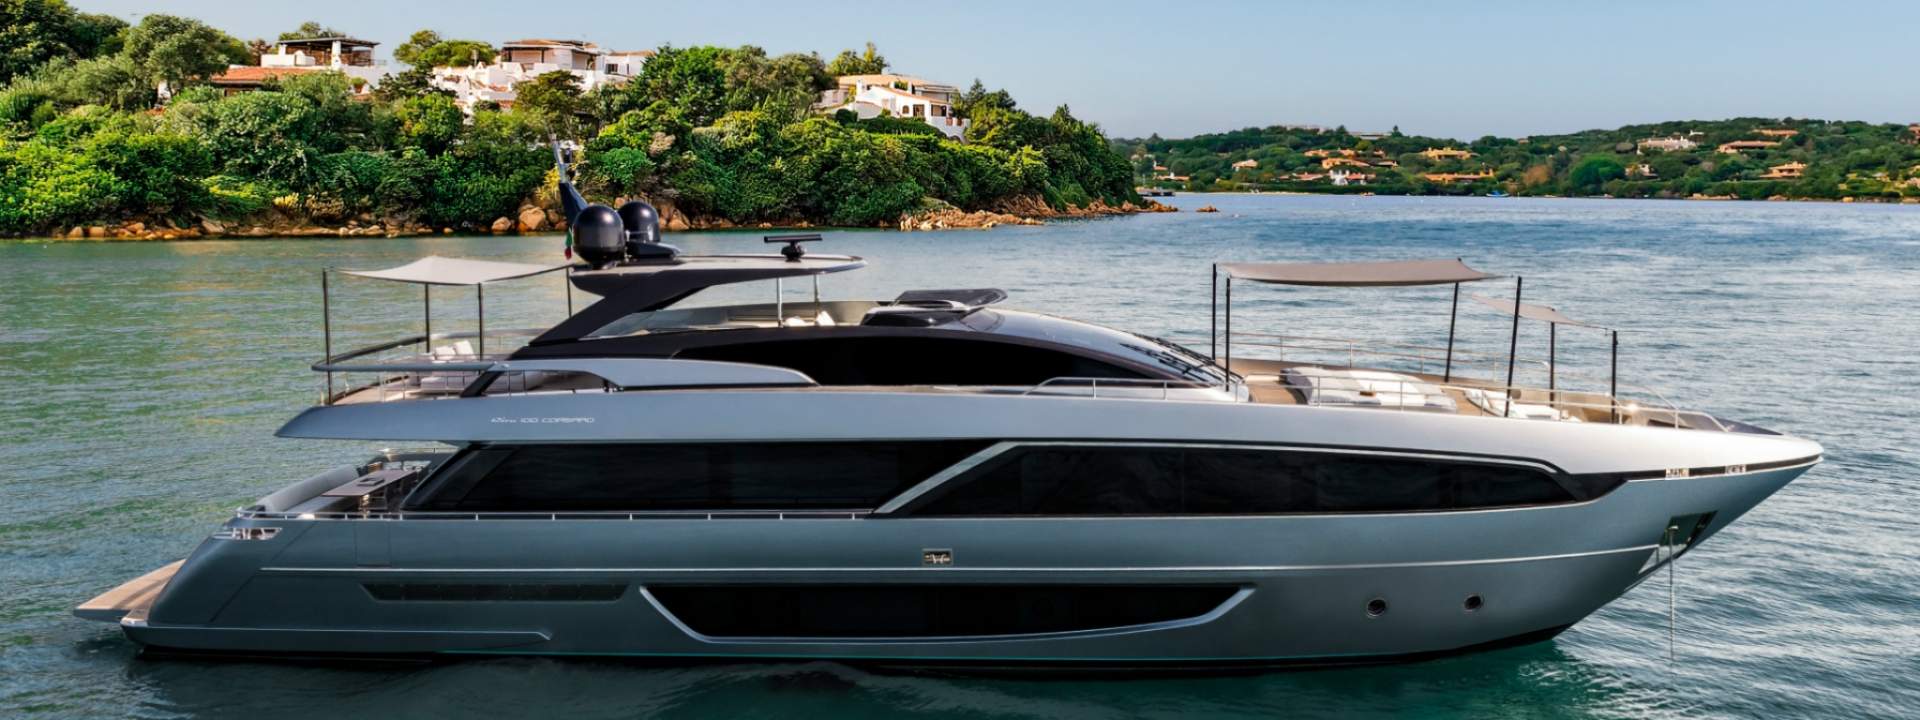 Luxusyacht Riva 100 Corsaro